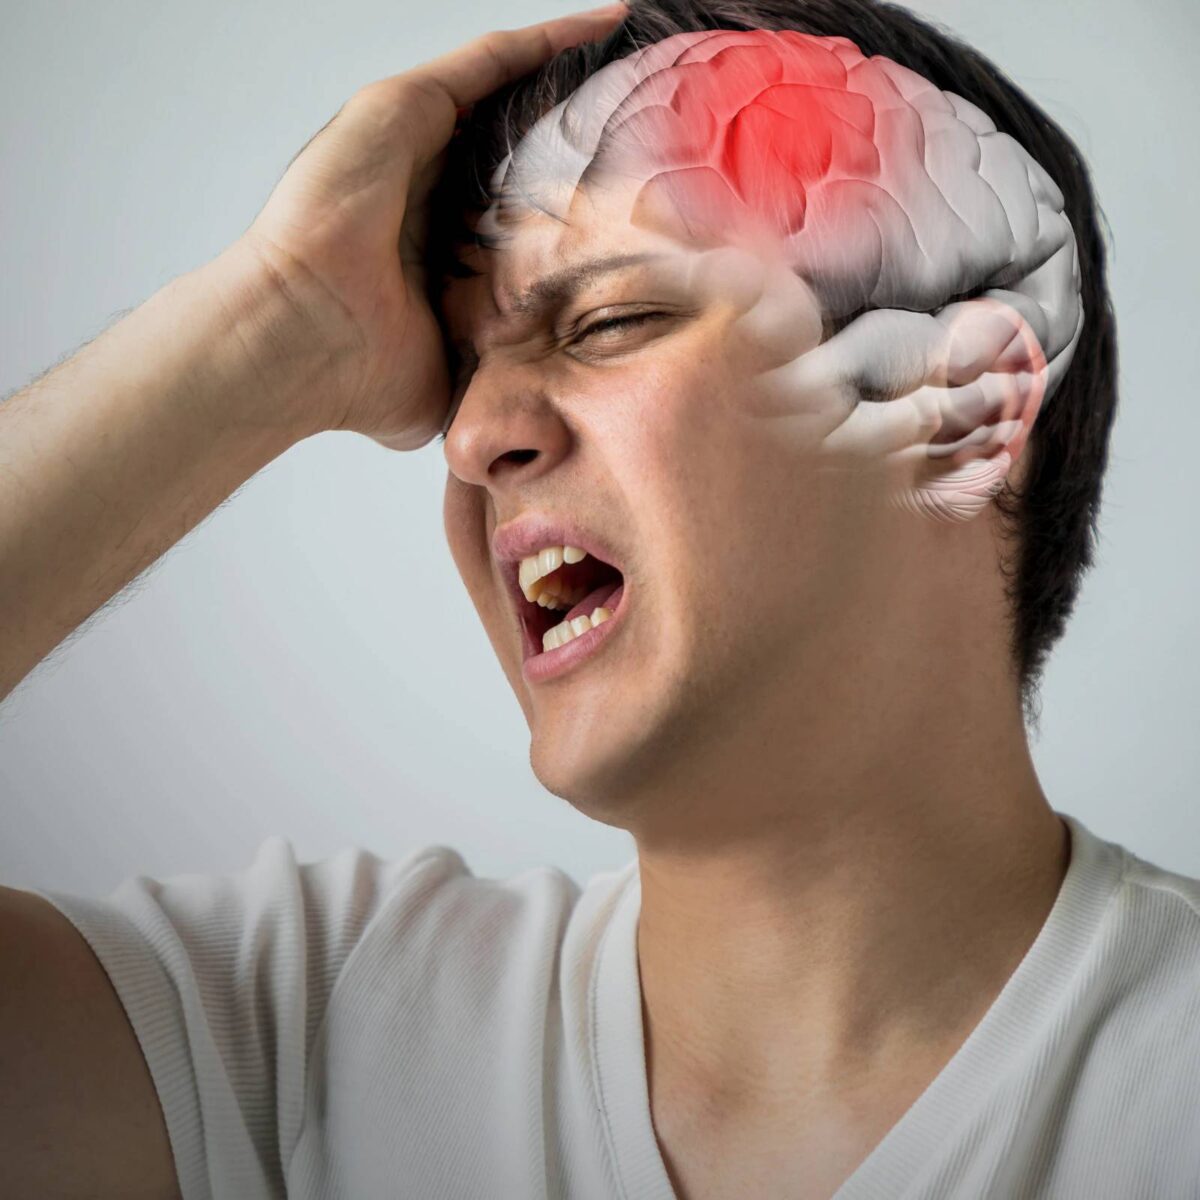 السكتة الدماغية أحد أسباب حدوث نوبات صرع